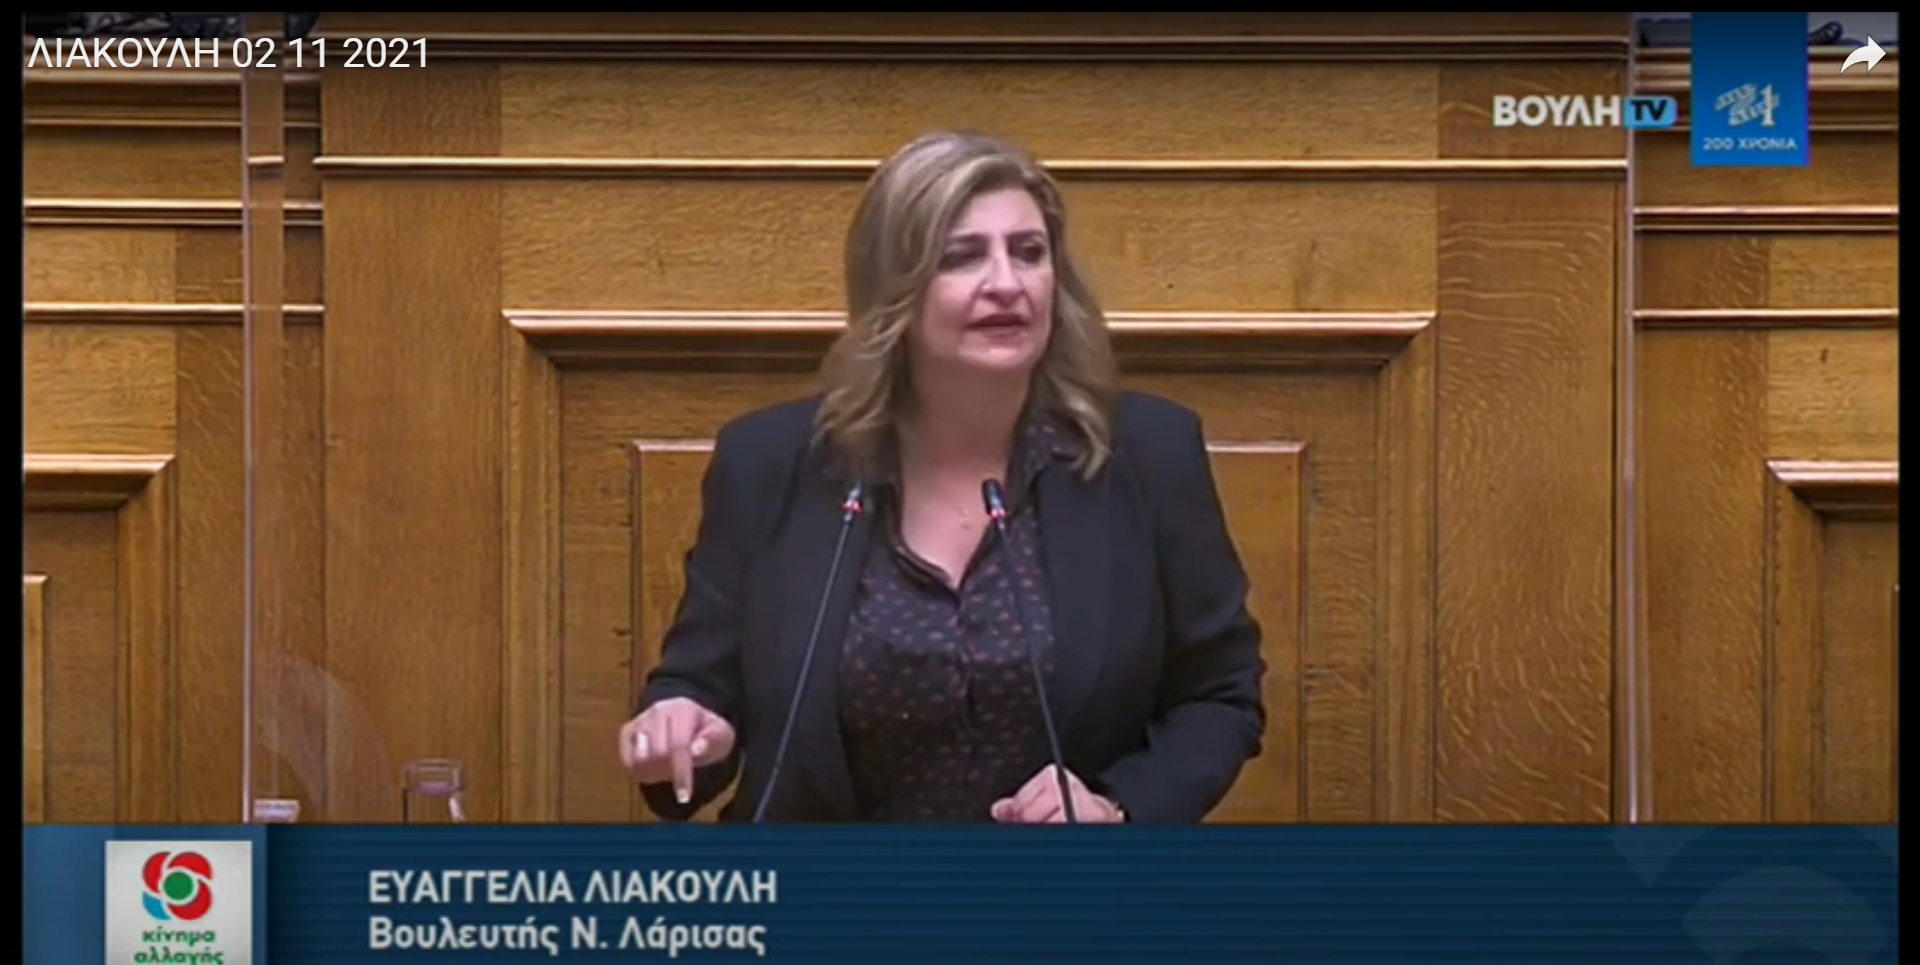 Ε. Λιακούλη: "Κατάφωρη αδικία στους σεισμοπαθείς της Θεσσαλίας!"  